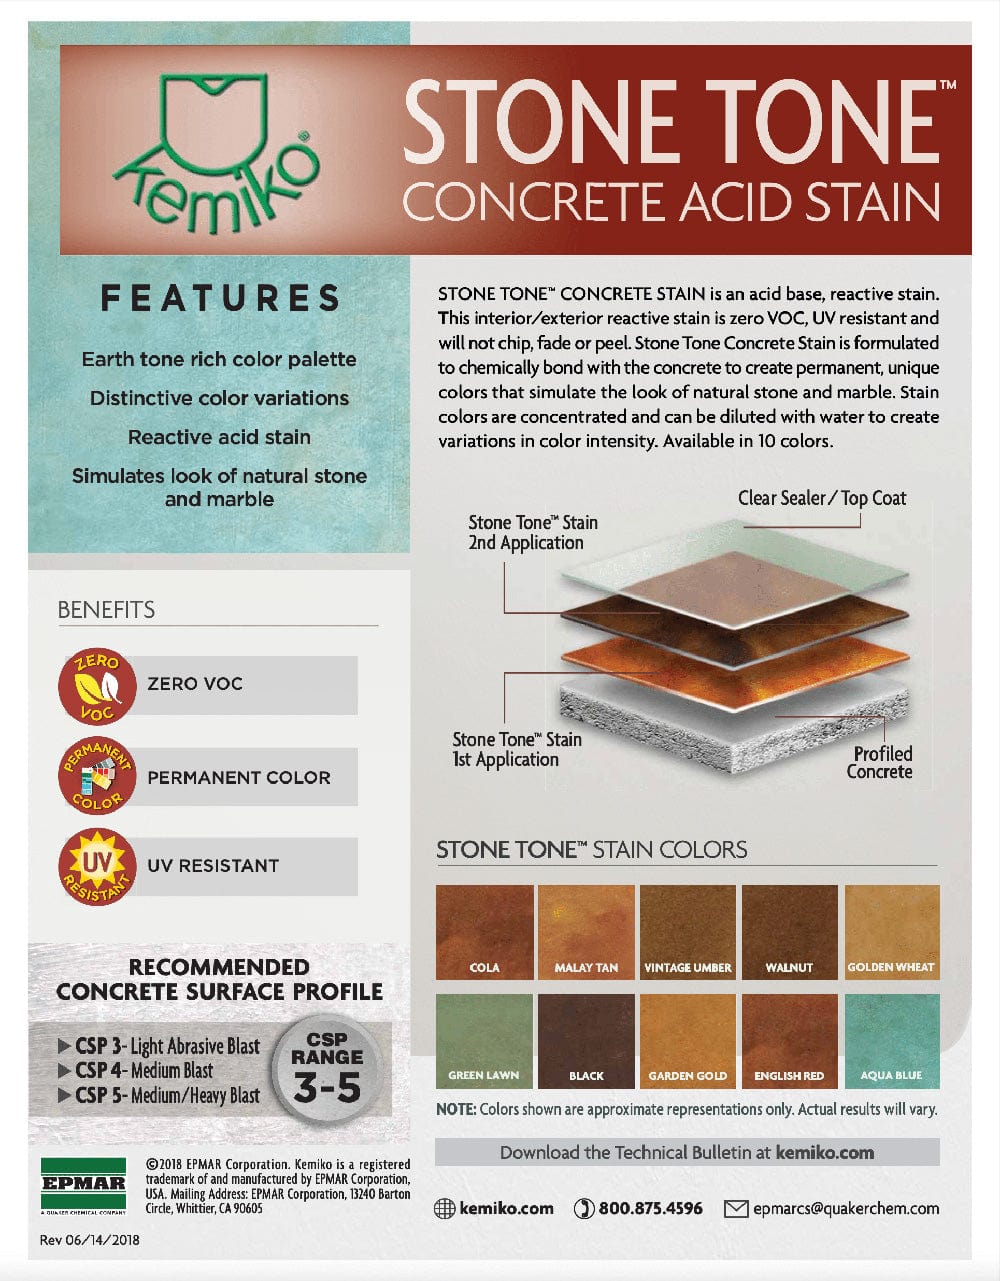 StoneKemiko Tone Concrete Stain - Xtreme Polishing Systems: concrete floor staining, stained concrete colors.